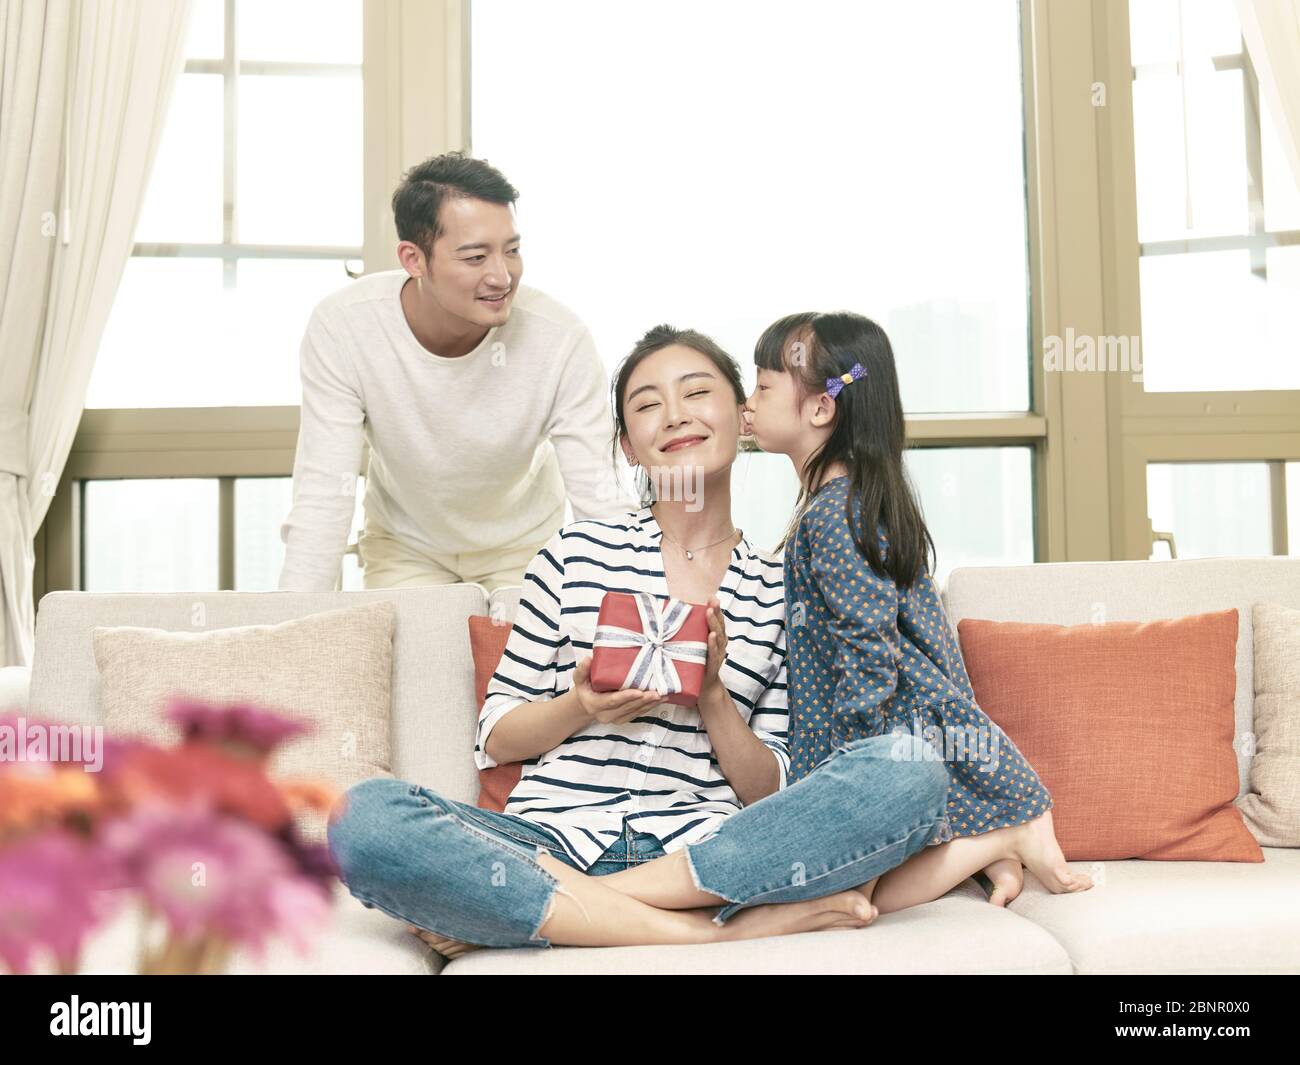 petite fille dorée asiatique embrassant la mère sur la joue après avoir donné un cadeau Banque D'Images